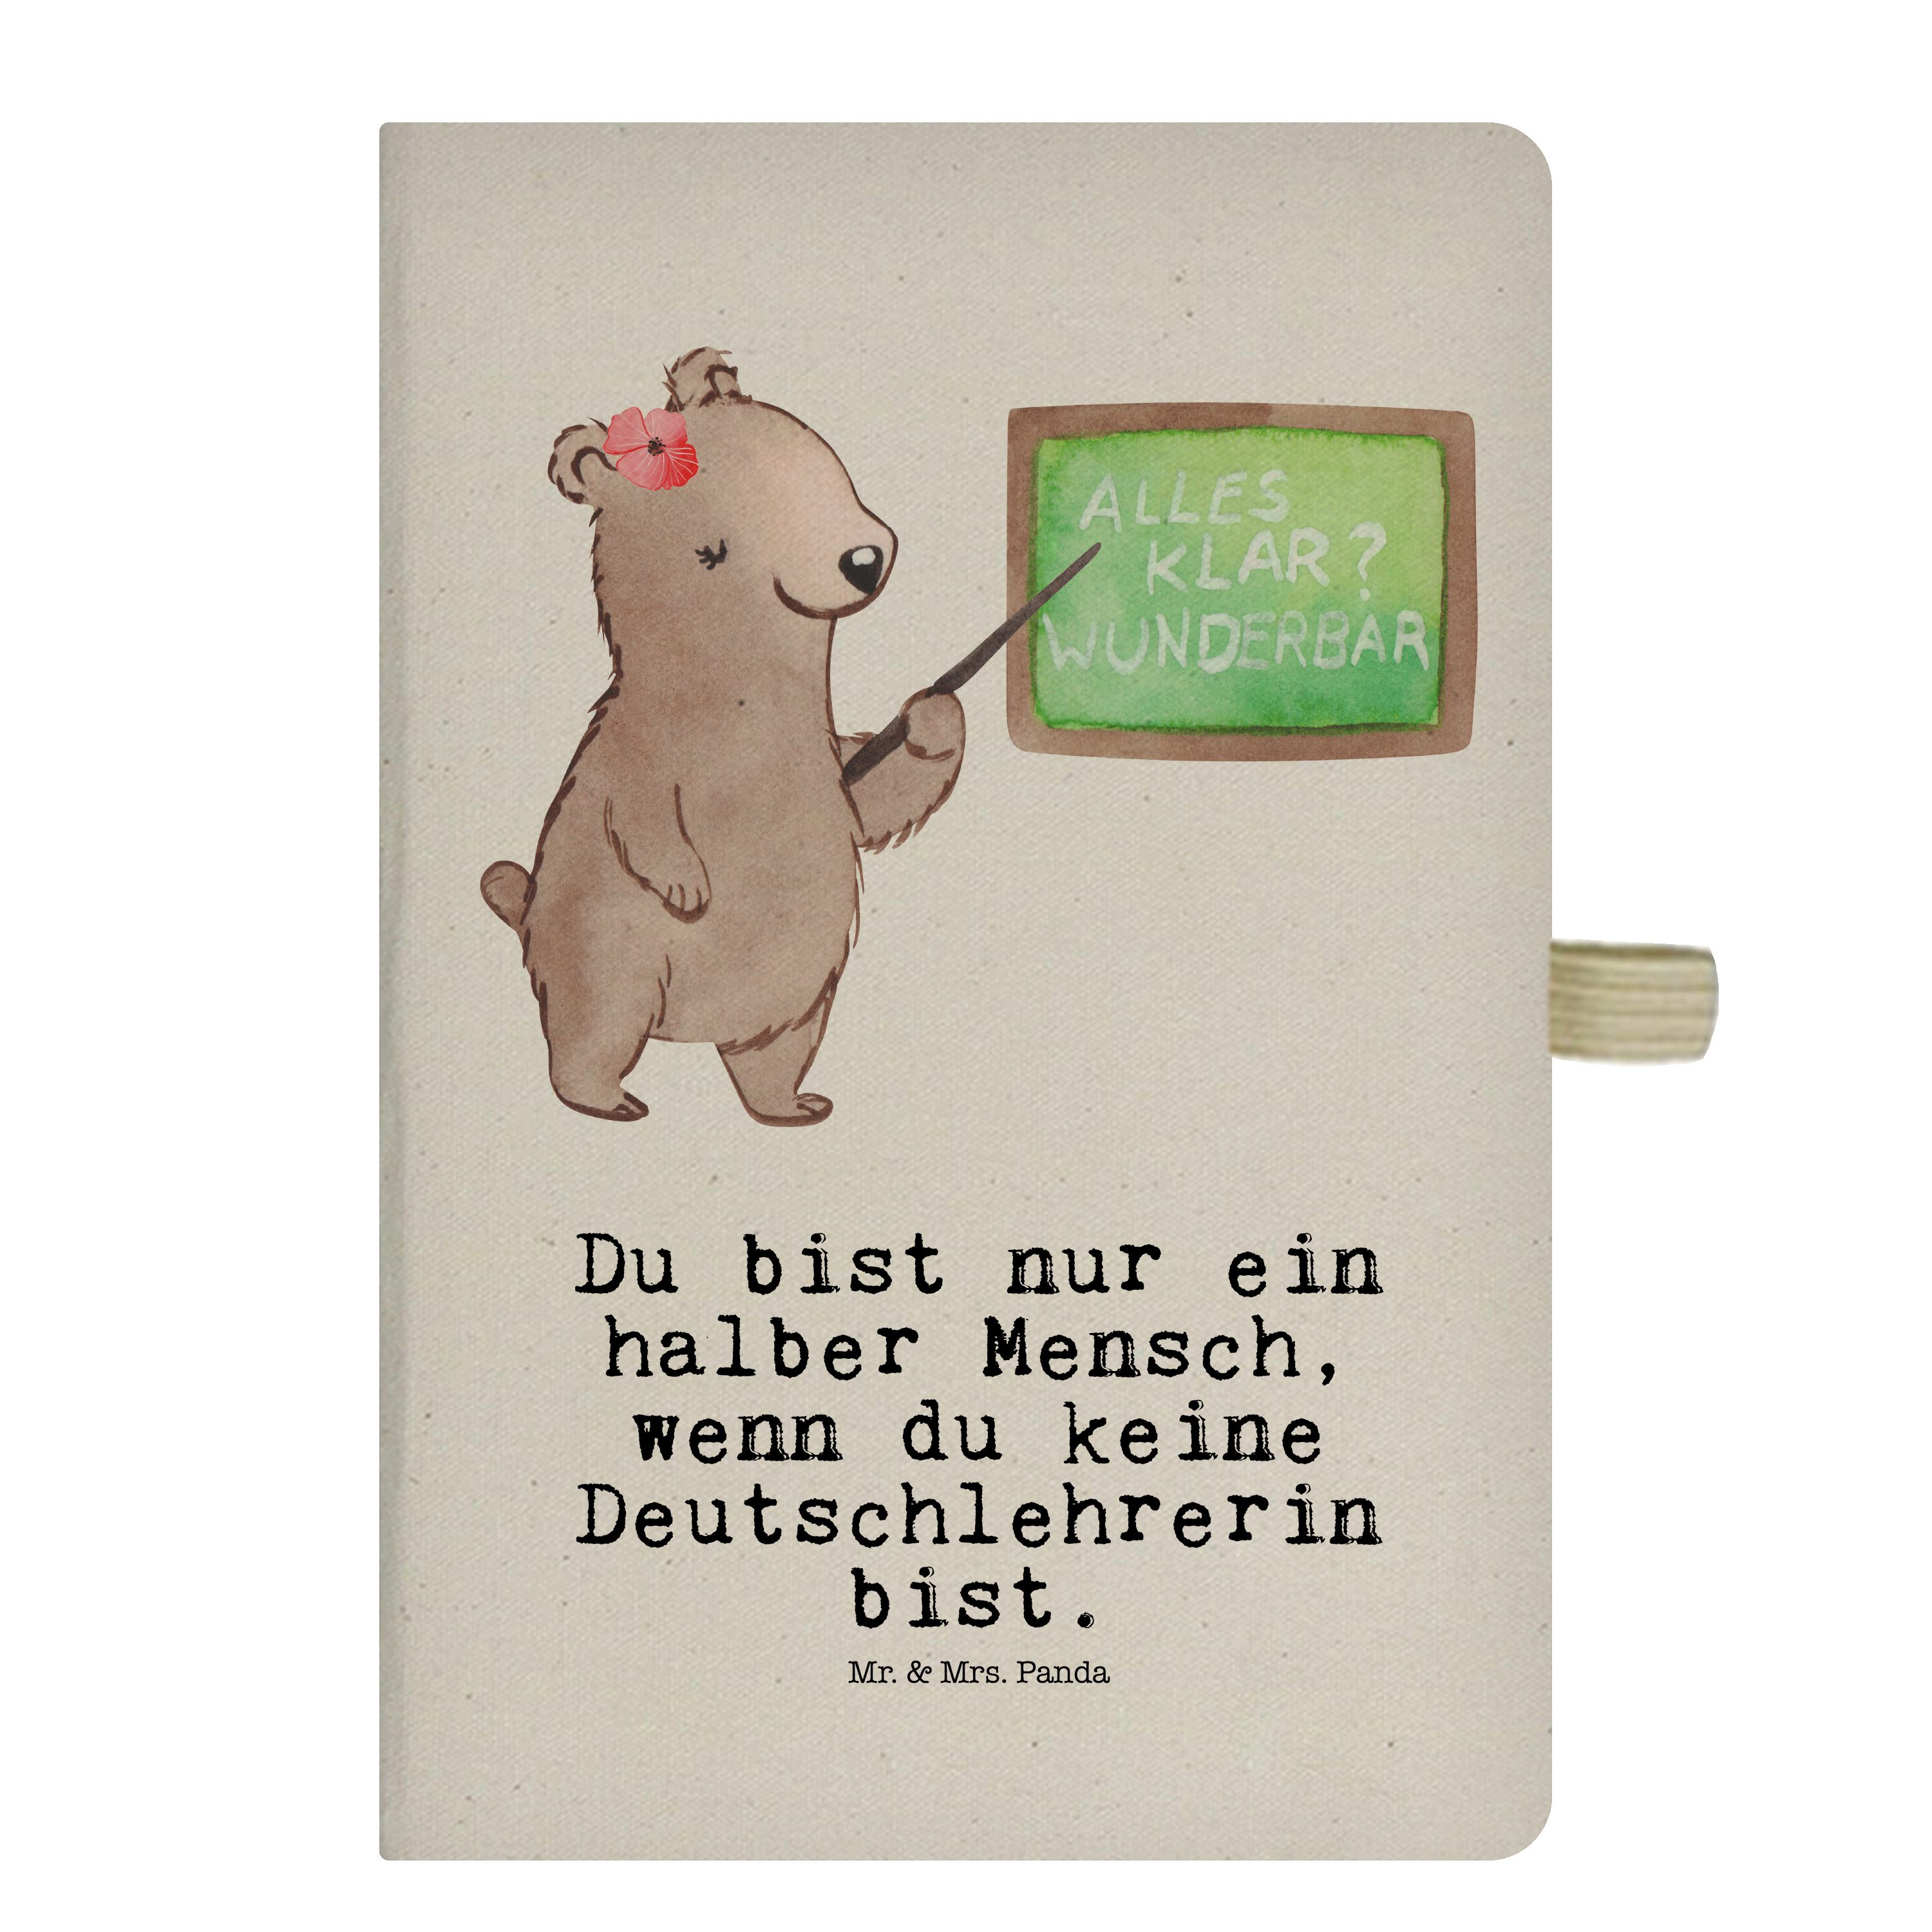 Mr. & Mrs. mit - Geschenk, Kollegin, Panda Schule, Transparent Notizbuch - Mr. Deutschlehrerin Herz Panda & Mrs